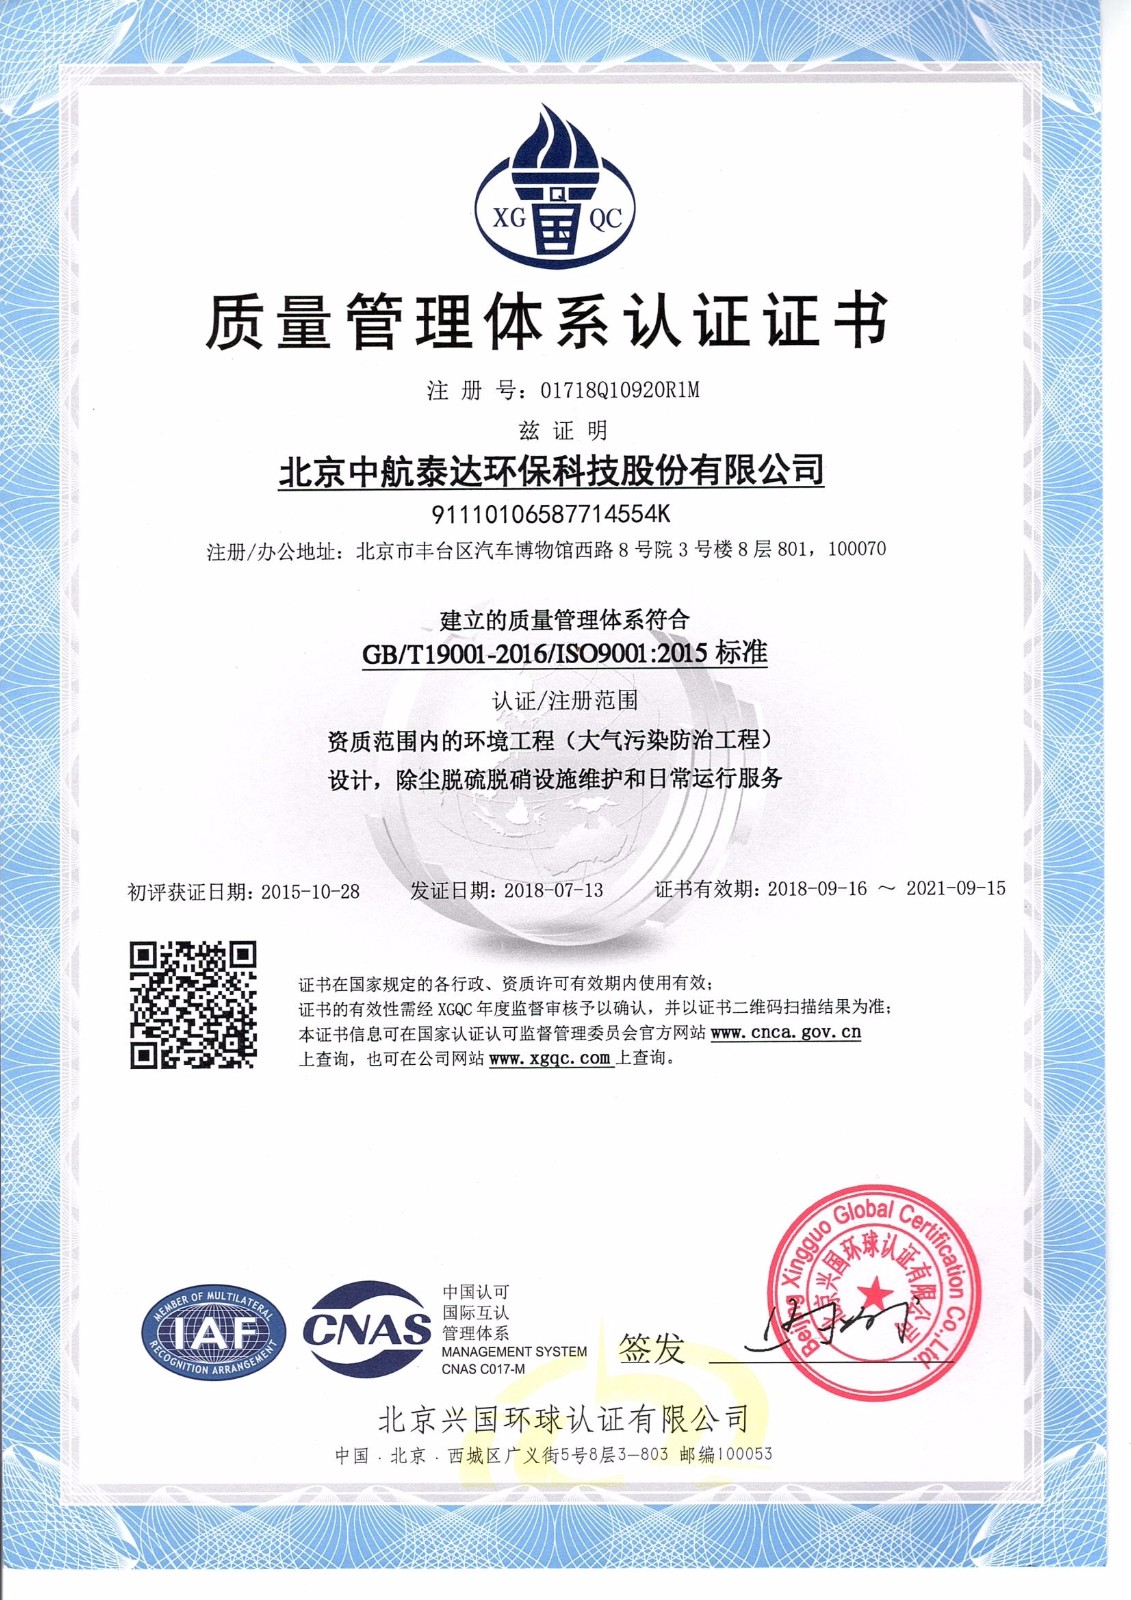 质量管理体系认证证书-设计-中文.jpg